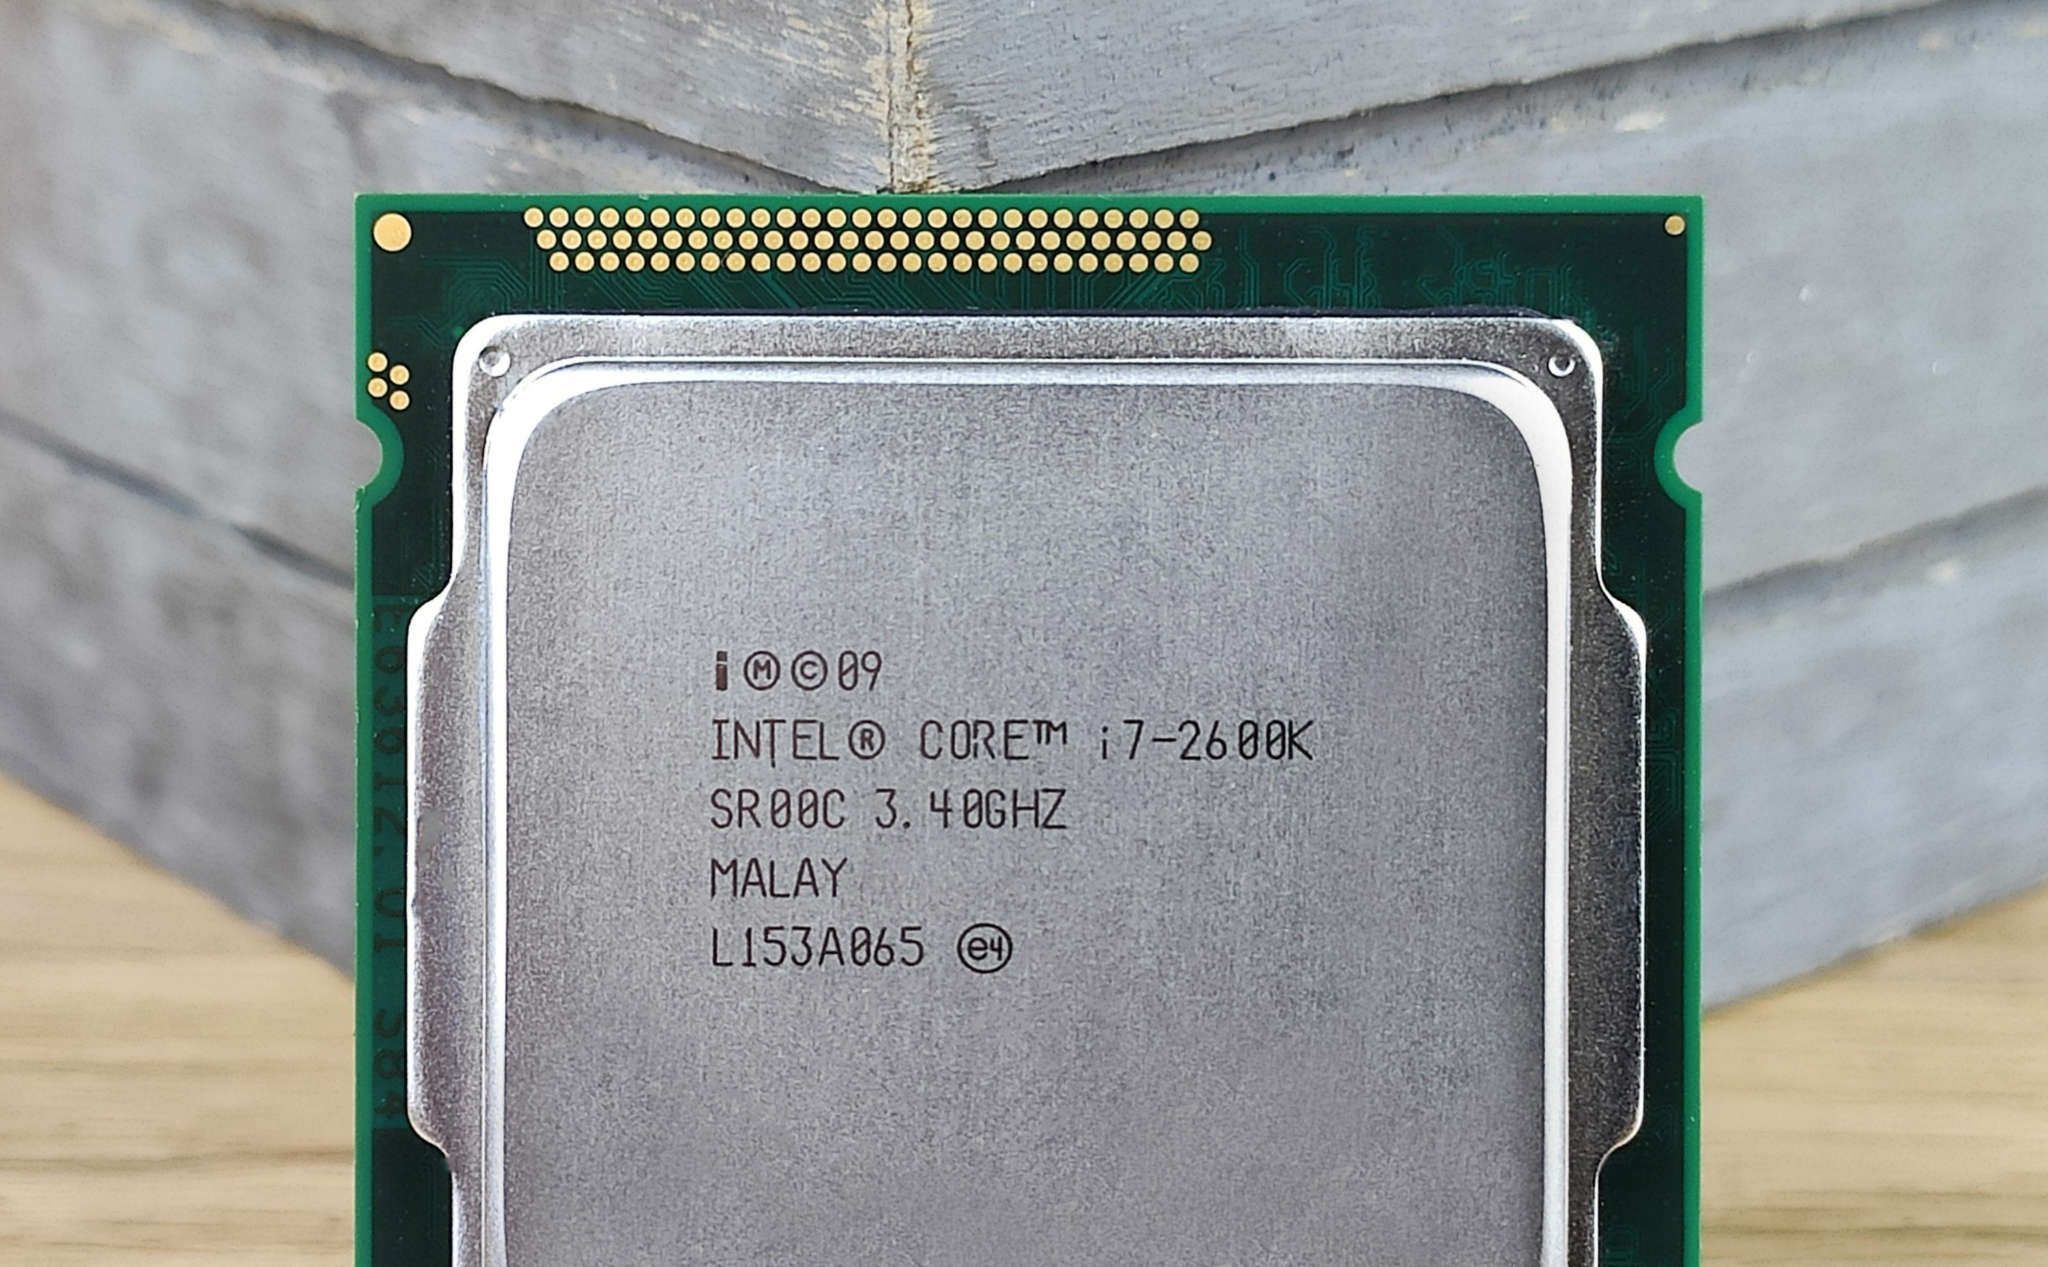 Интел i7 2600. I7 2600k. I7 2600. Intel(r) Core(TM) i3-3240 CPU @ 3.40GHZ. Intel(r) Core(TM) i3-3240 CPU @ 3.40GHZ 3.40 GHZ или Intel i5-760 (4*2800), AMD Phenom II.